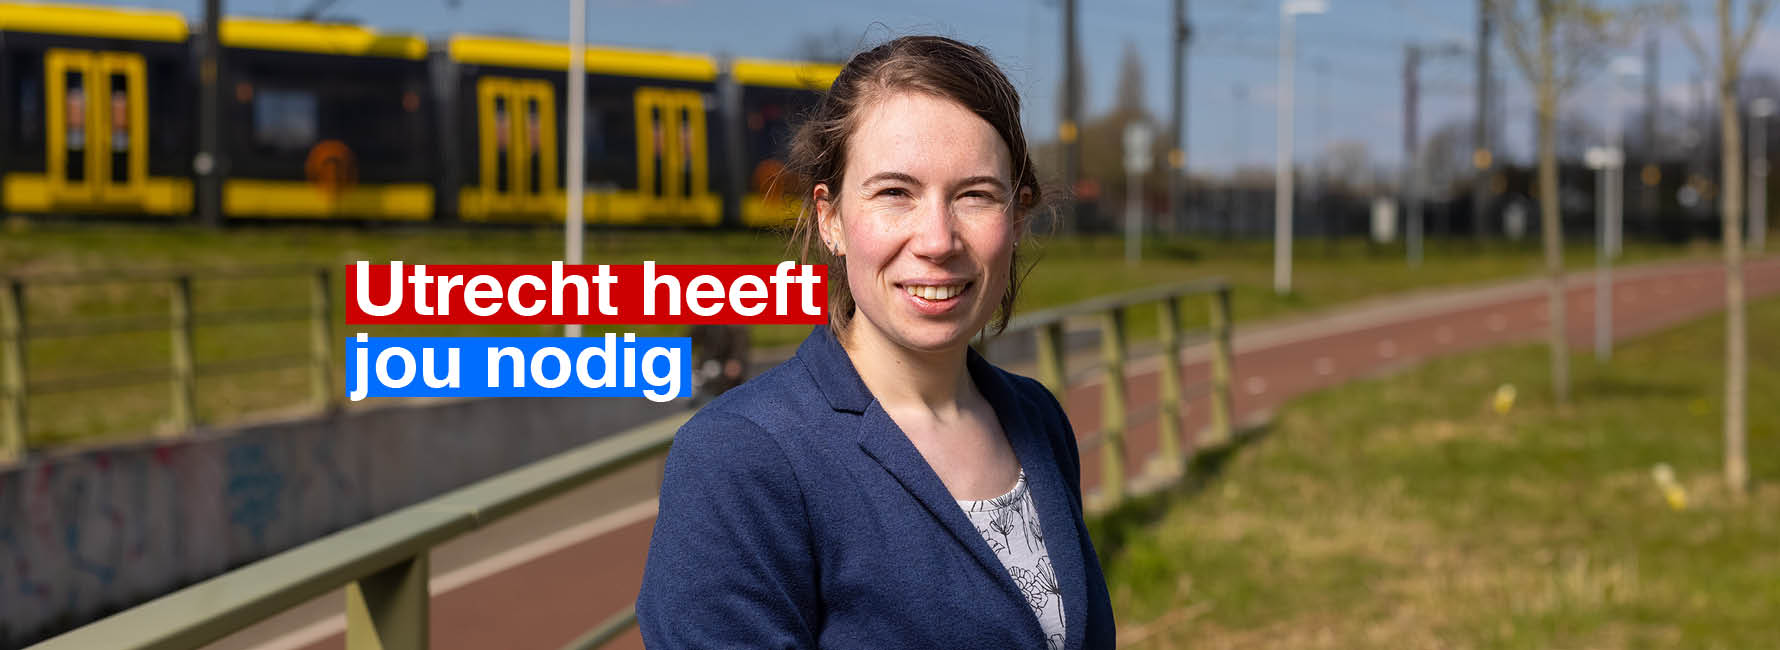 Iemand staat voor een trambaan met op de achtergrond een tram. In beeld staat de tekst Utrecht heeft jou nodig.